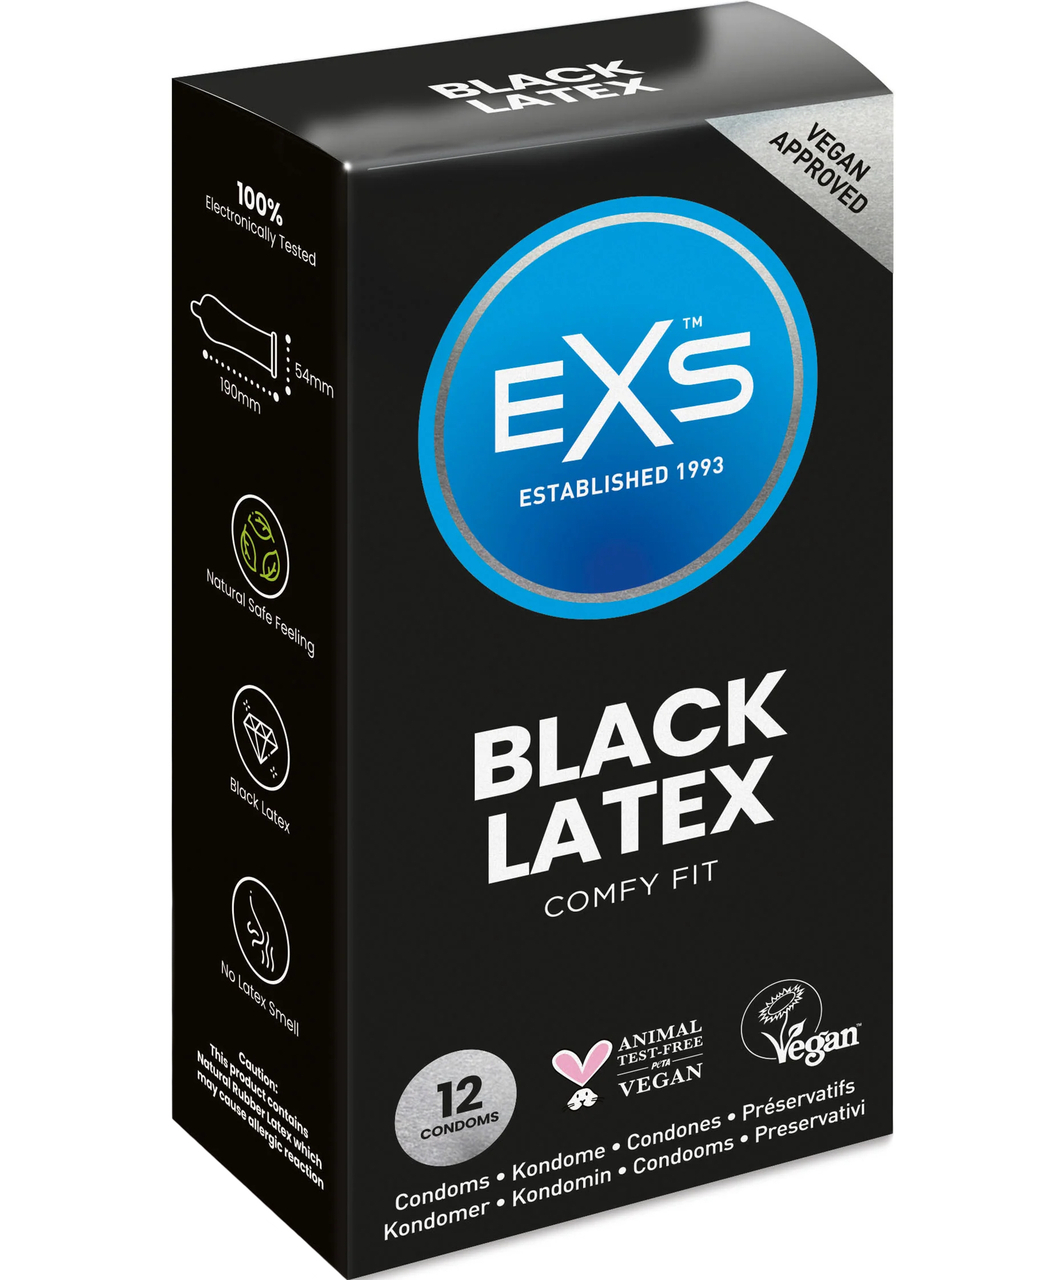 EXS Black Latex Comfy Fit prezervatyvai (12 vnt.)